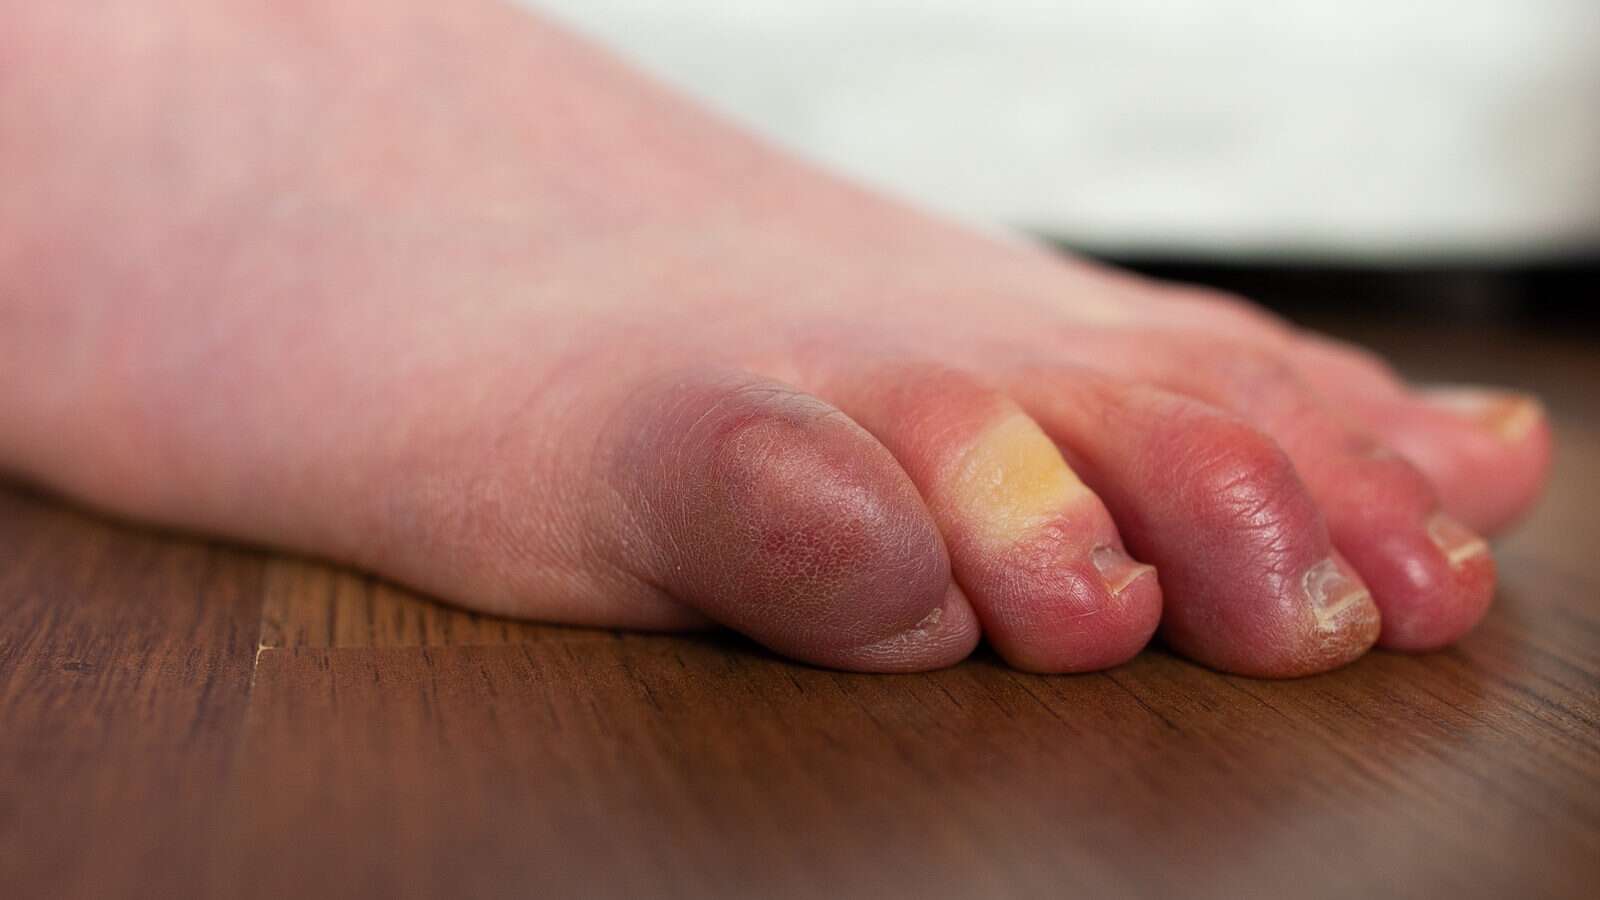 Swelling in fingers in winter: सर्दियों में पैरों की उंगलियों में है सूजन, जल्द करें ये उपाय